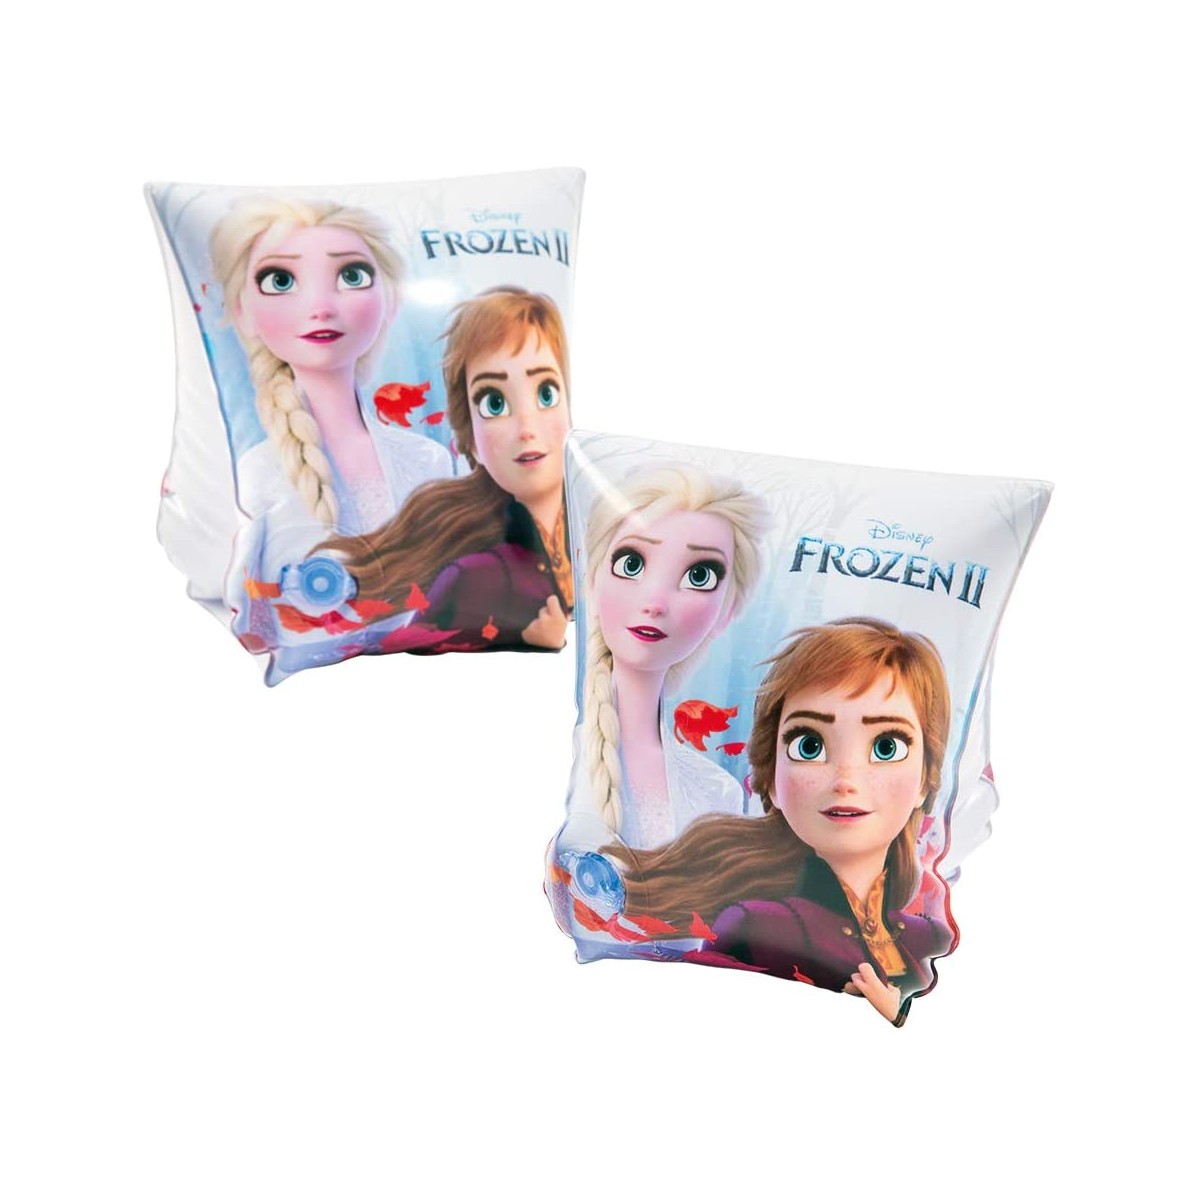 Braccioli Frozen da 23 x 15 cm con Anna e Elsa